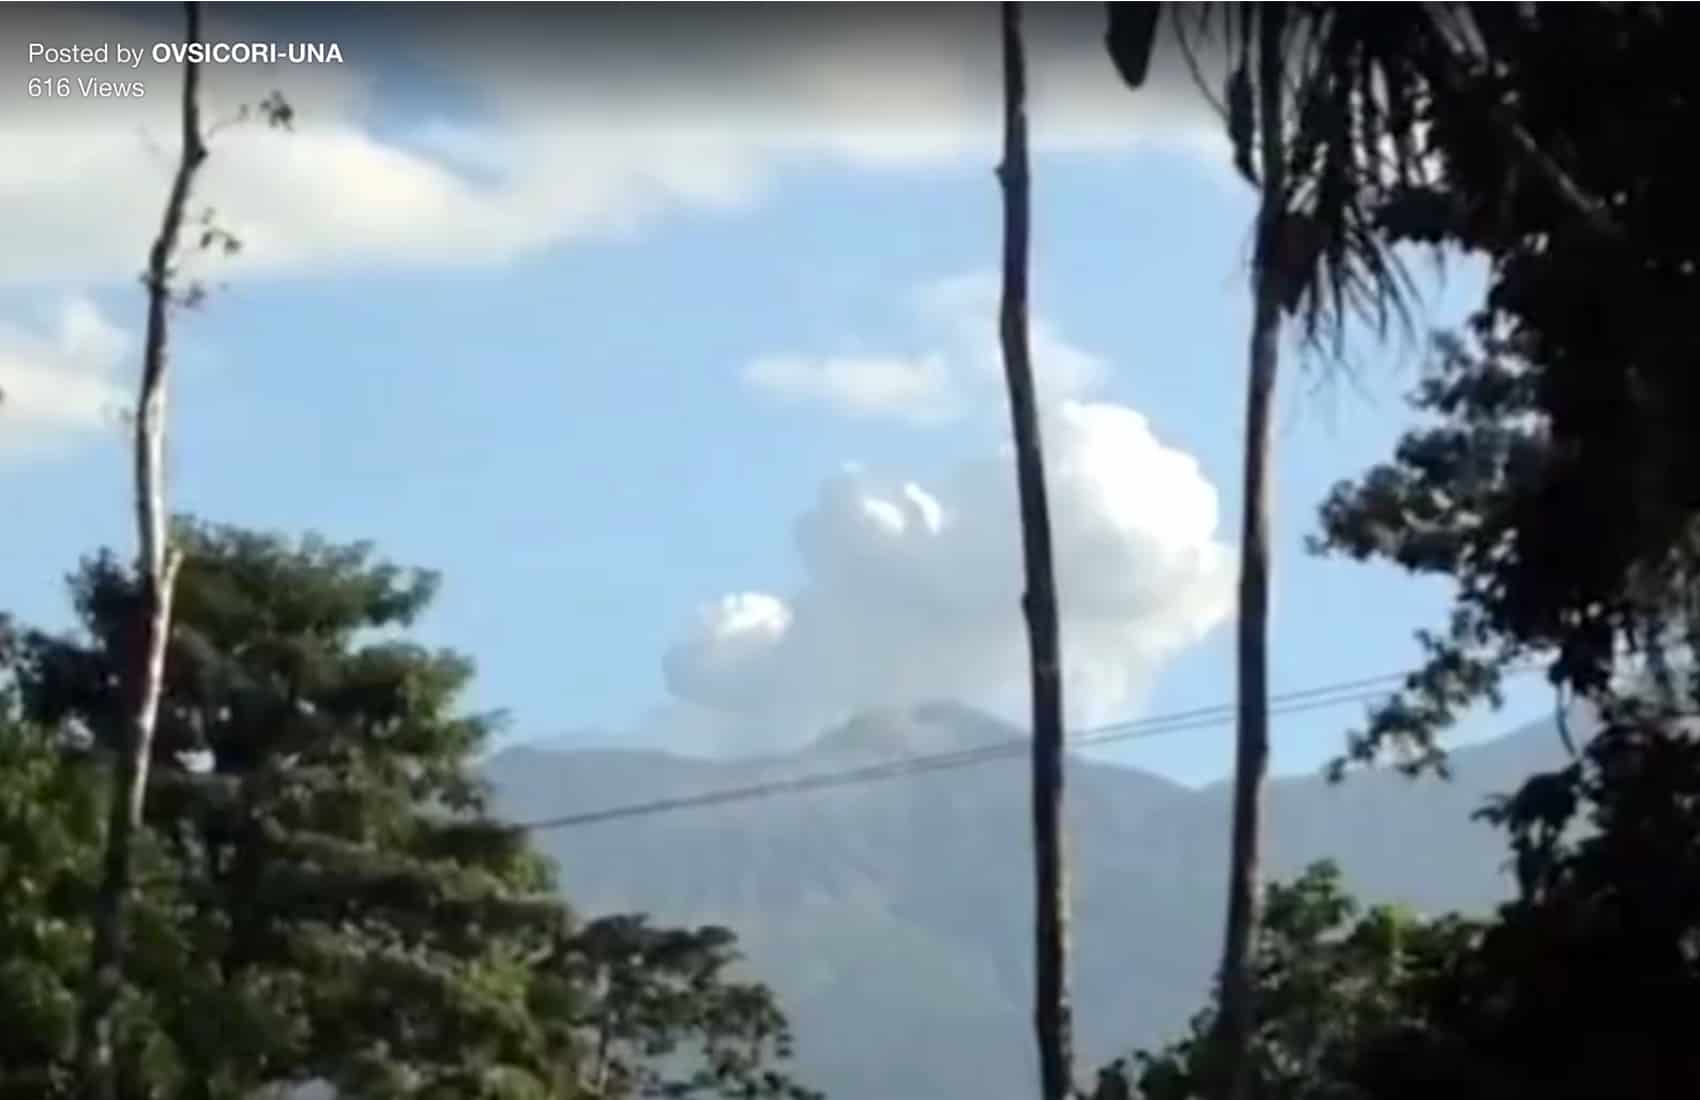 Eruption at Rincón de la Vieja Volcano, March 15, 2016.